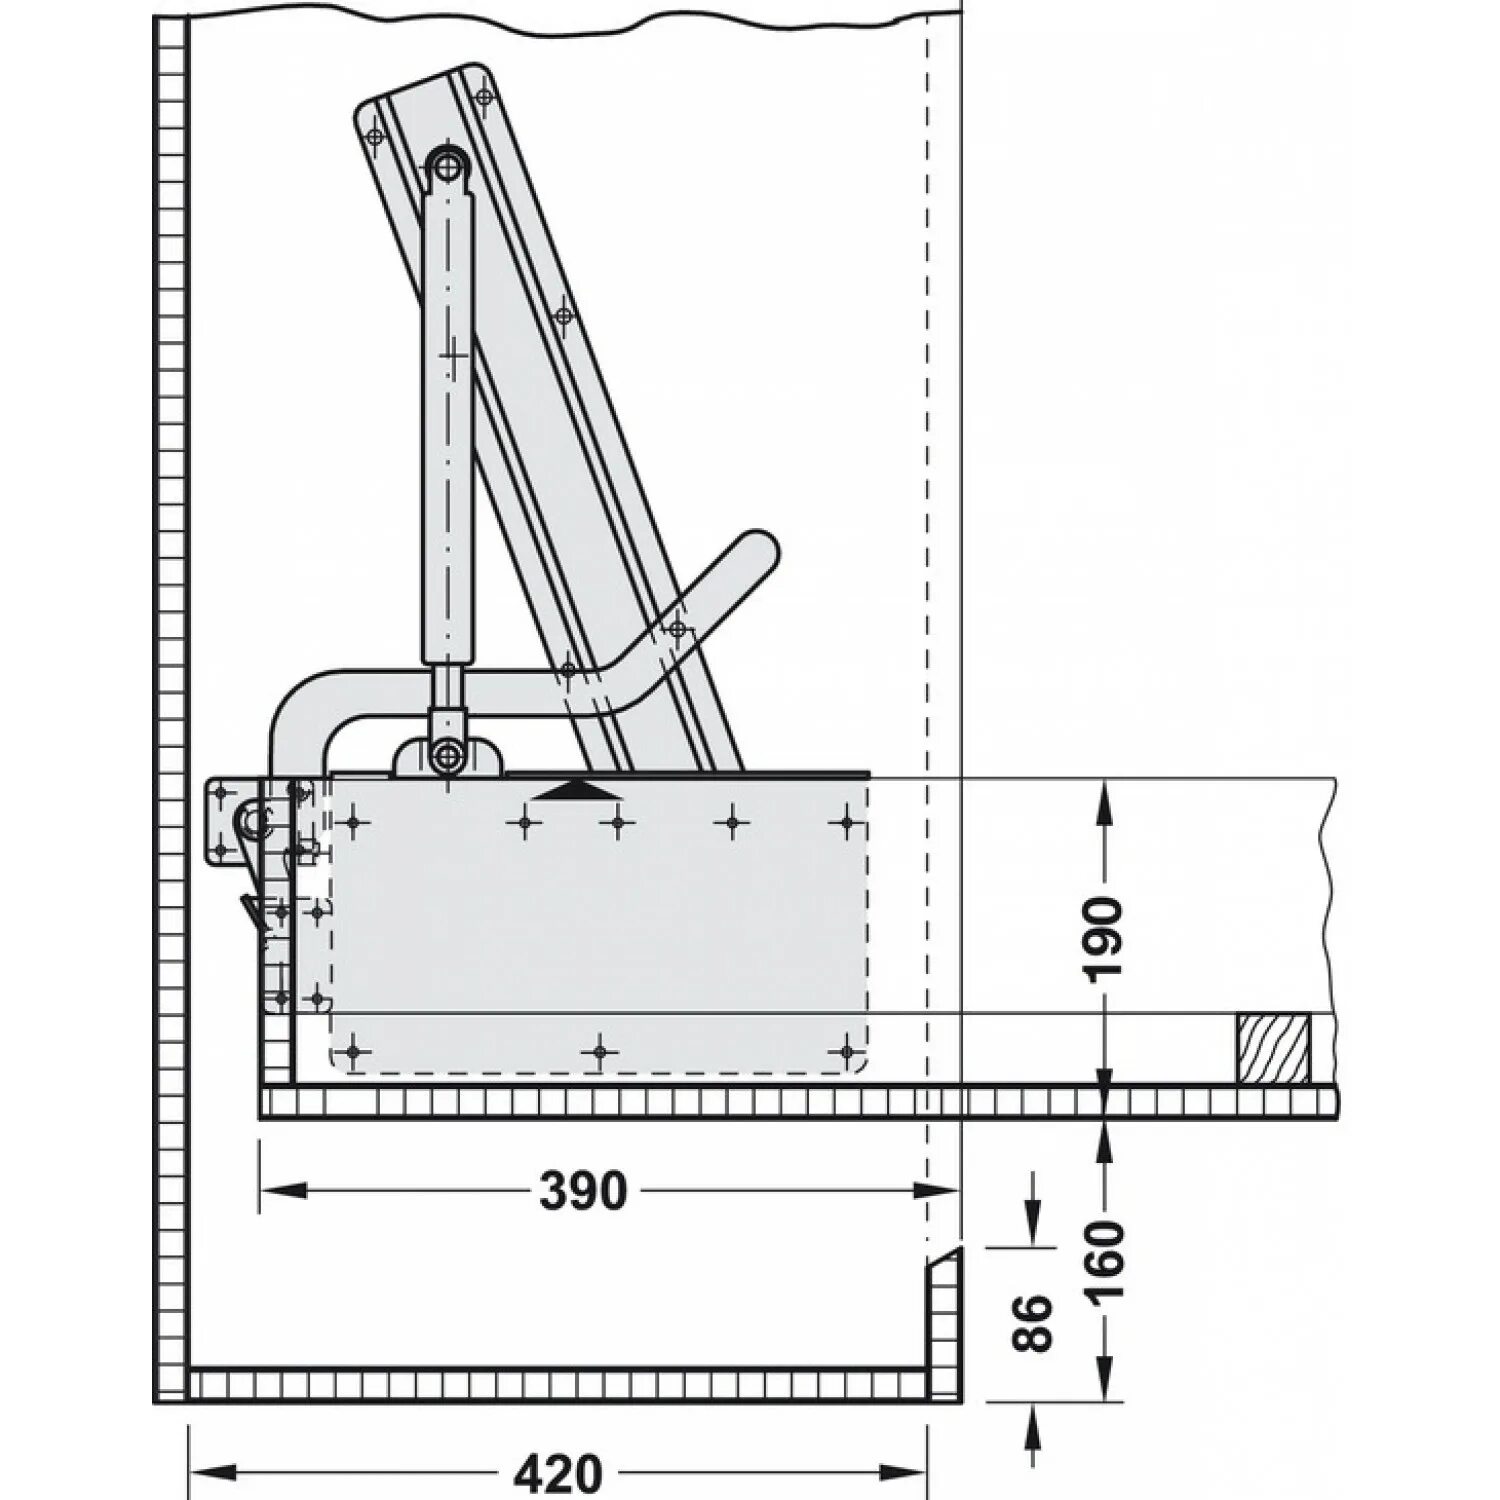 Шкаф кровать механизм трансформеры. Подъемный механизм 582 схема монтажа. Фурнитура для откидных кроватей Bettlift. Механизм шкаф-кровать пружинный ml209. Механизм откидной горизонтальной кровати WALLBED 209 присадка.